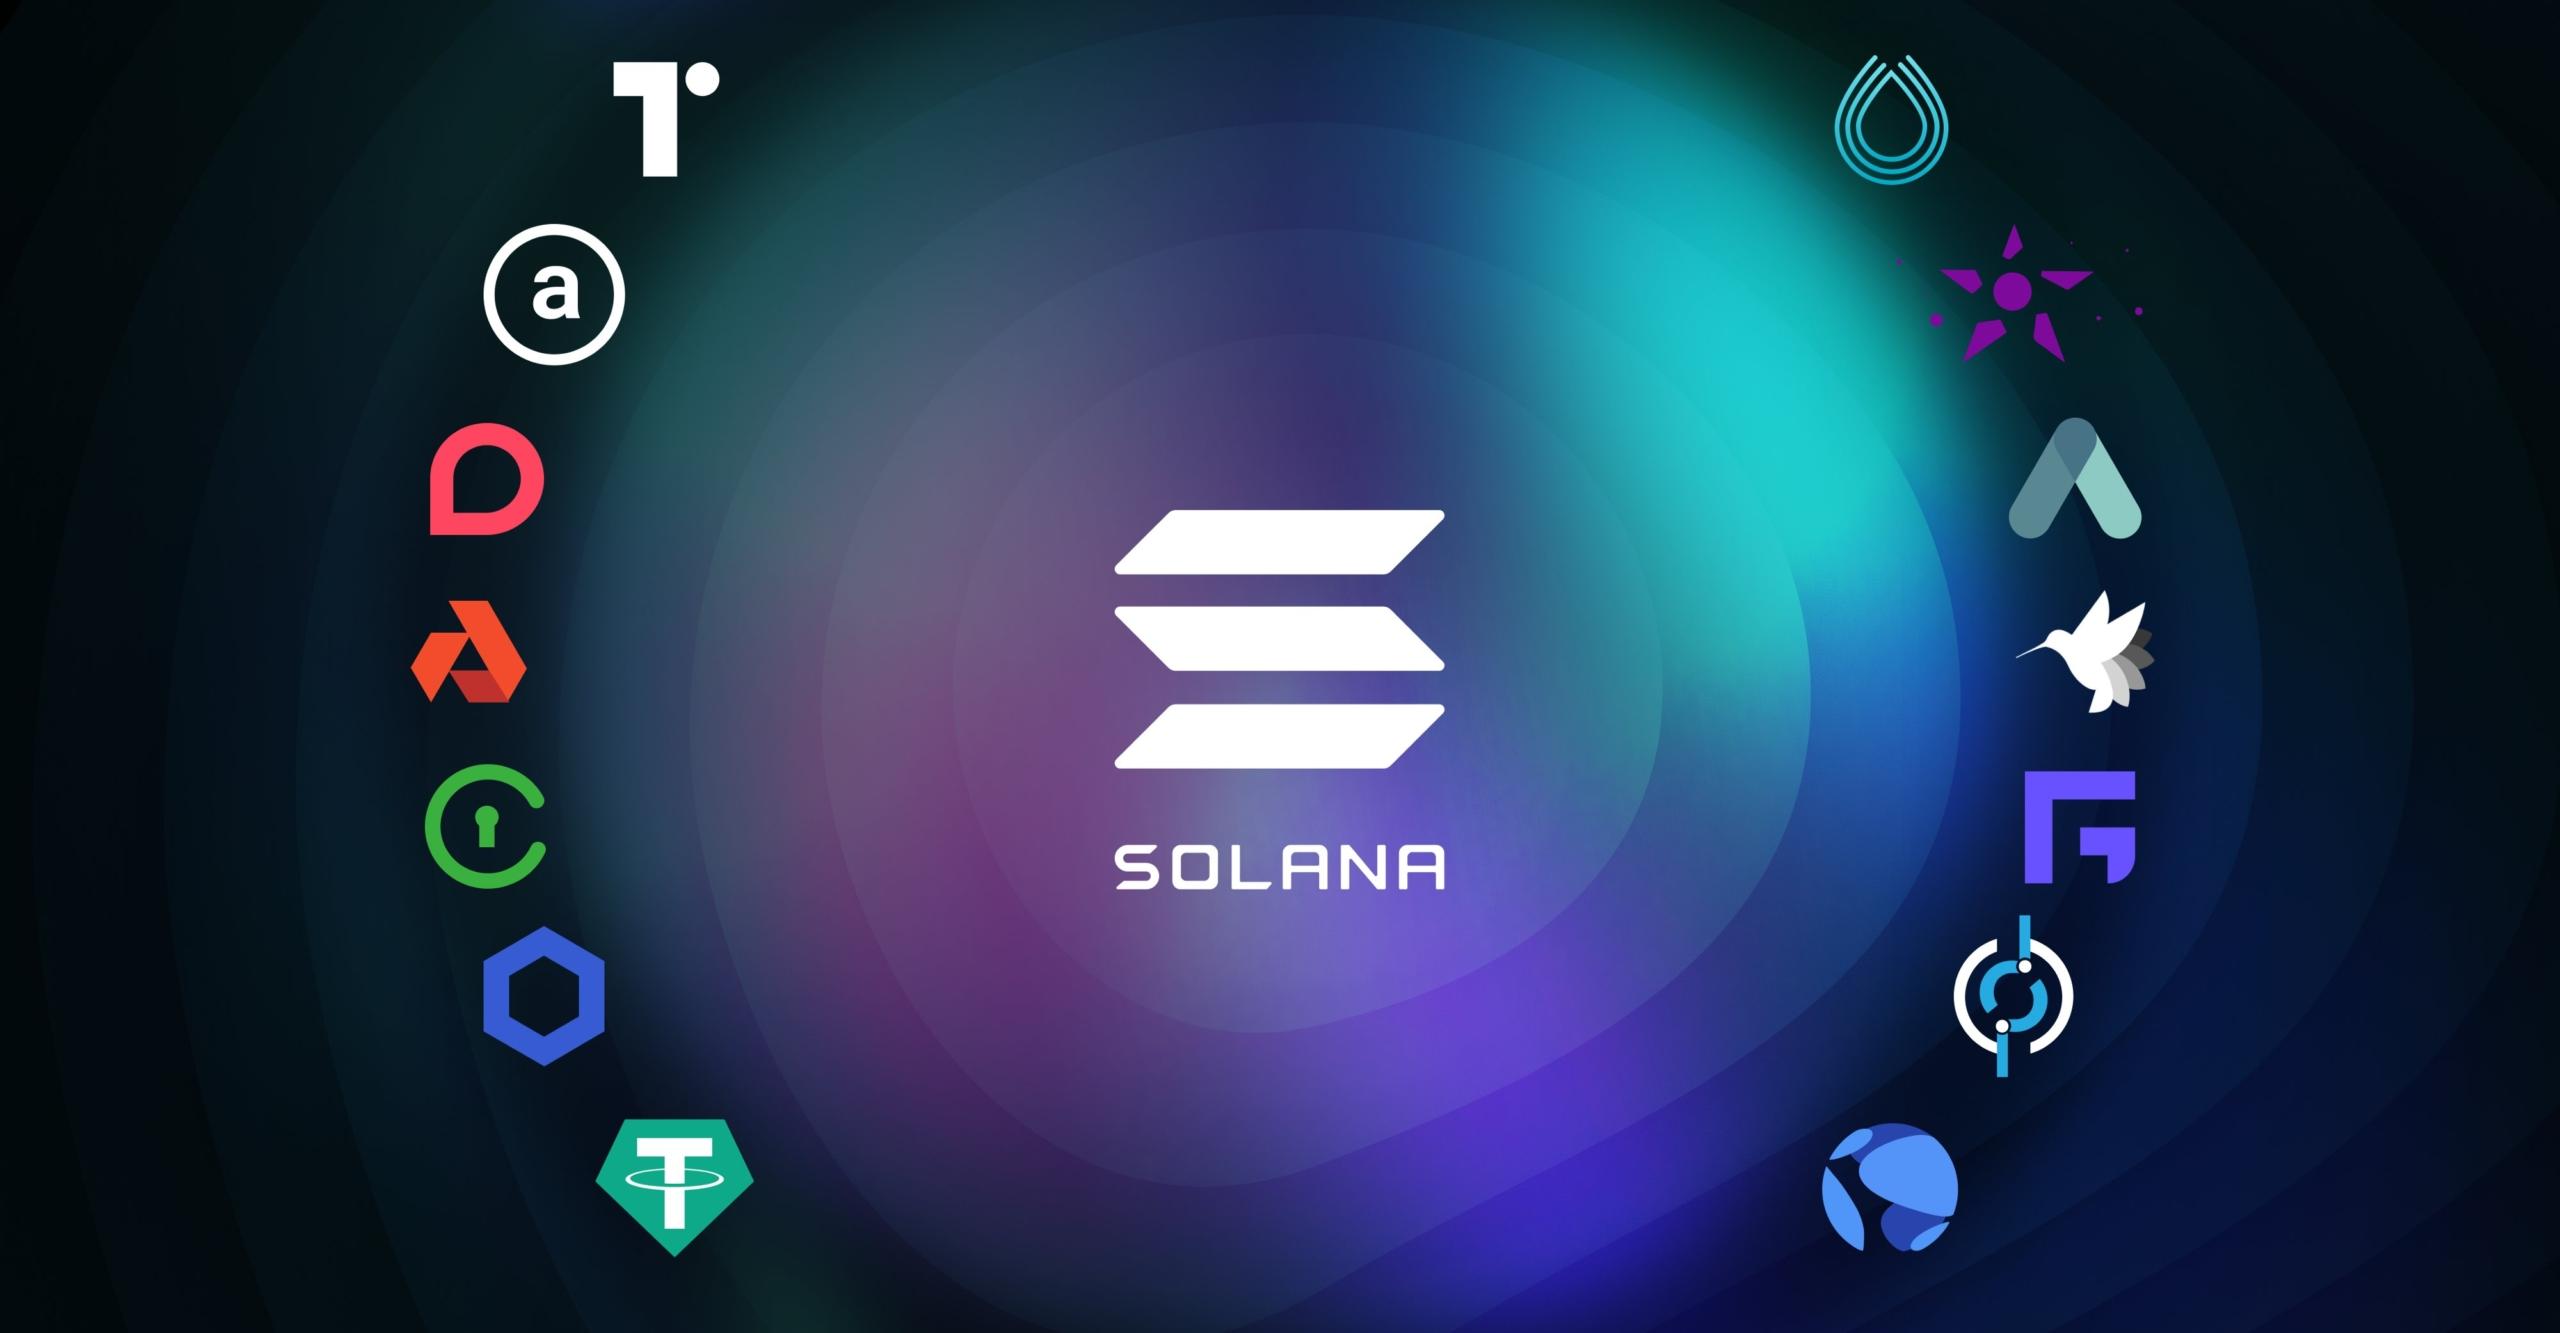 Solana, Smart Contracts ve DeFi uygulamalarını barındırmak için tasarlanmıştır. SOL, Solana ağının yerel tokenidir ve kullanıcıların ağda işlem yapmak için ödeme yapmasına olanak tanır. Token aynı zamanda ağda yönetim ve oy hakları da sağlar.